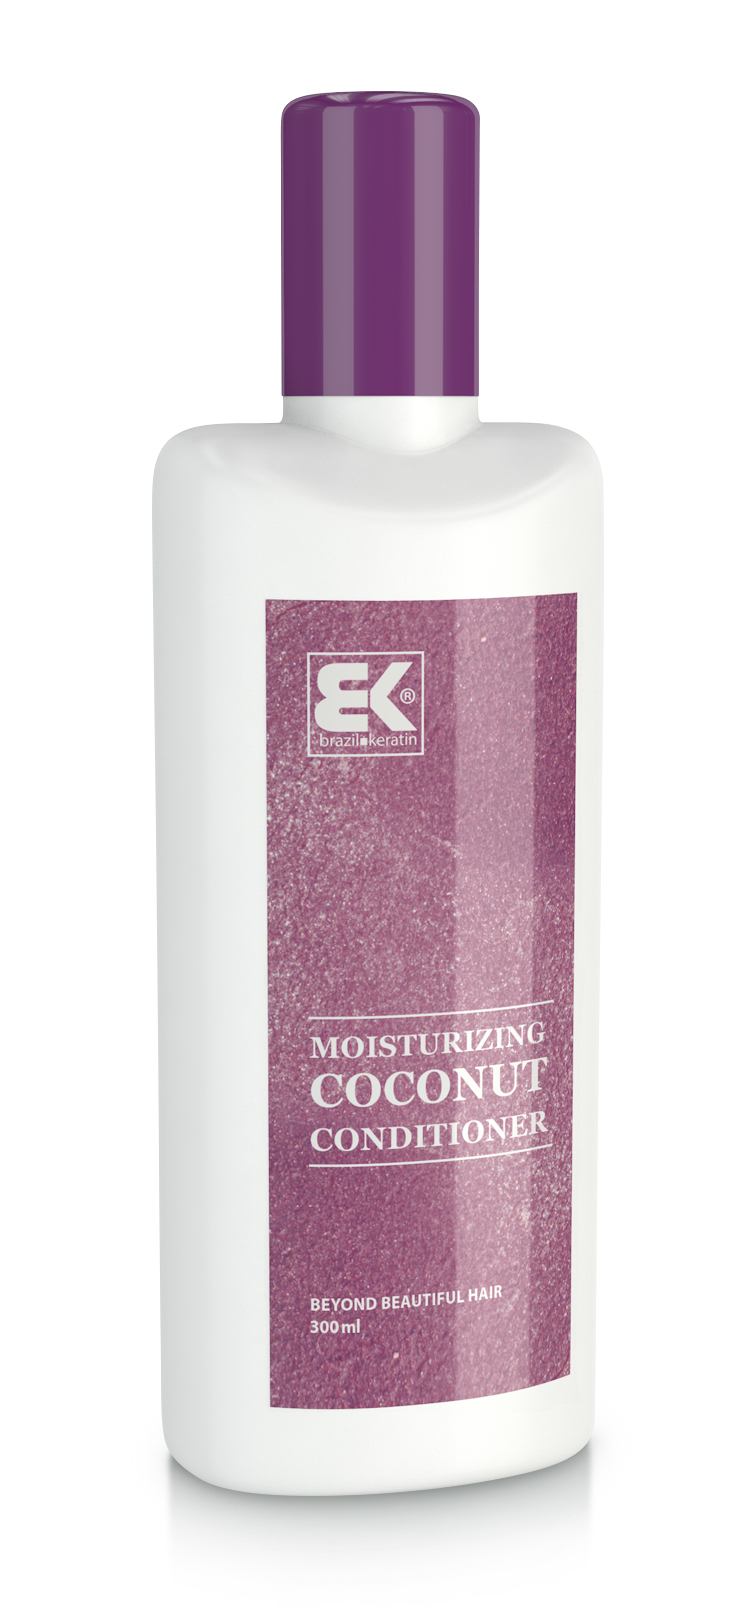 Brazil Keratin Keratínový vlasový kondicionér pre suché vlasy (Moisturizing Coconut Conditioner) 300 ml + 2 mesiace na vrátenie tovaru